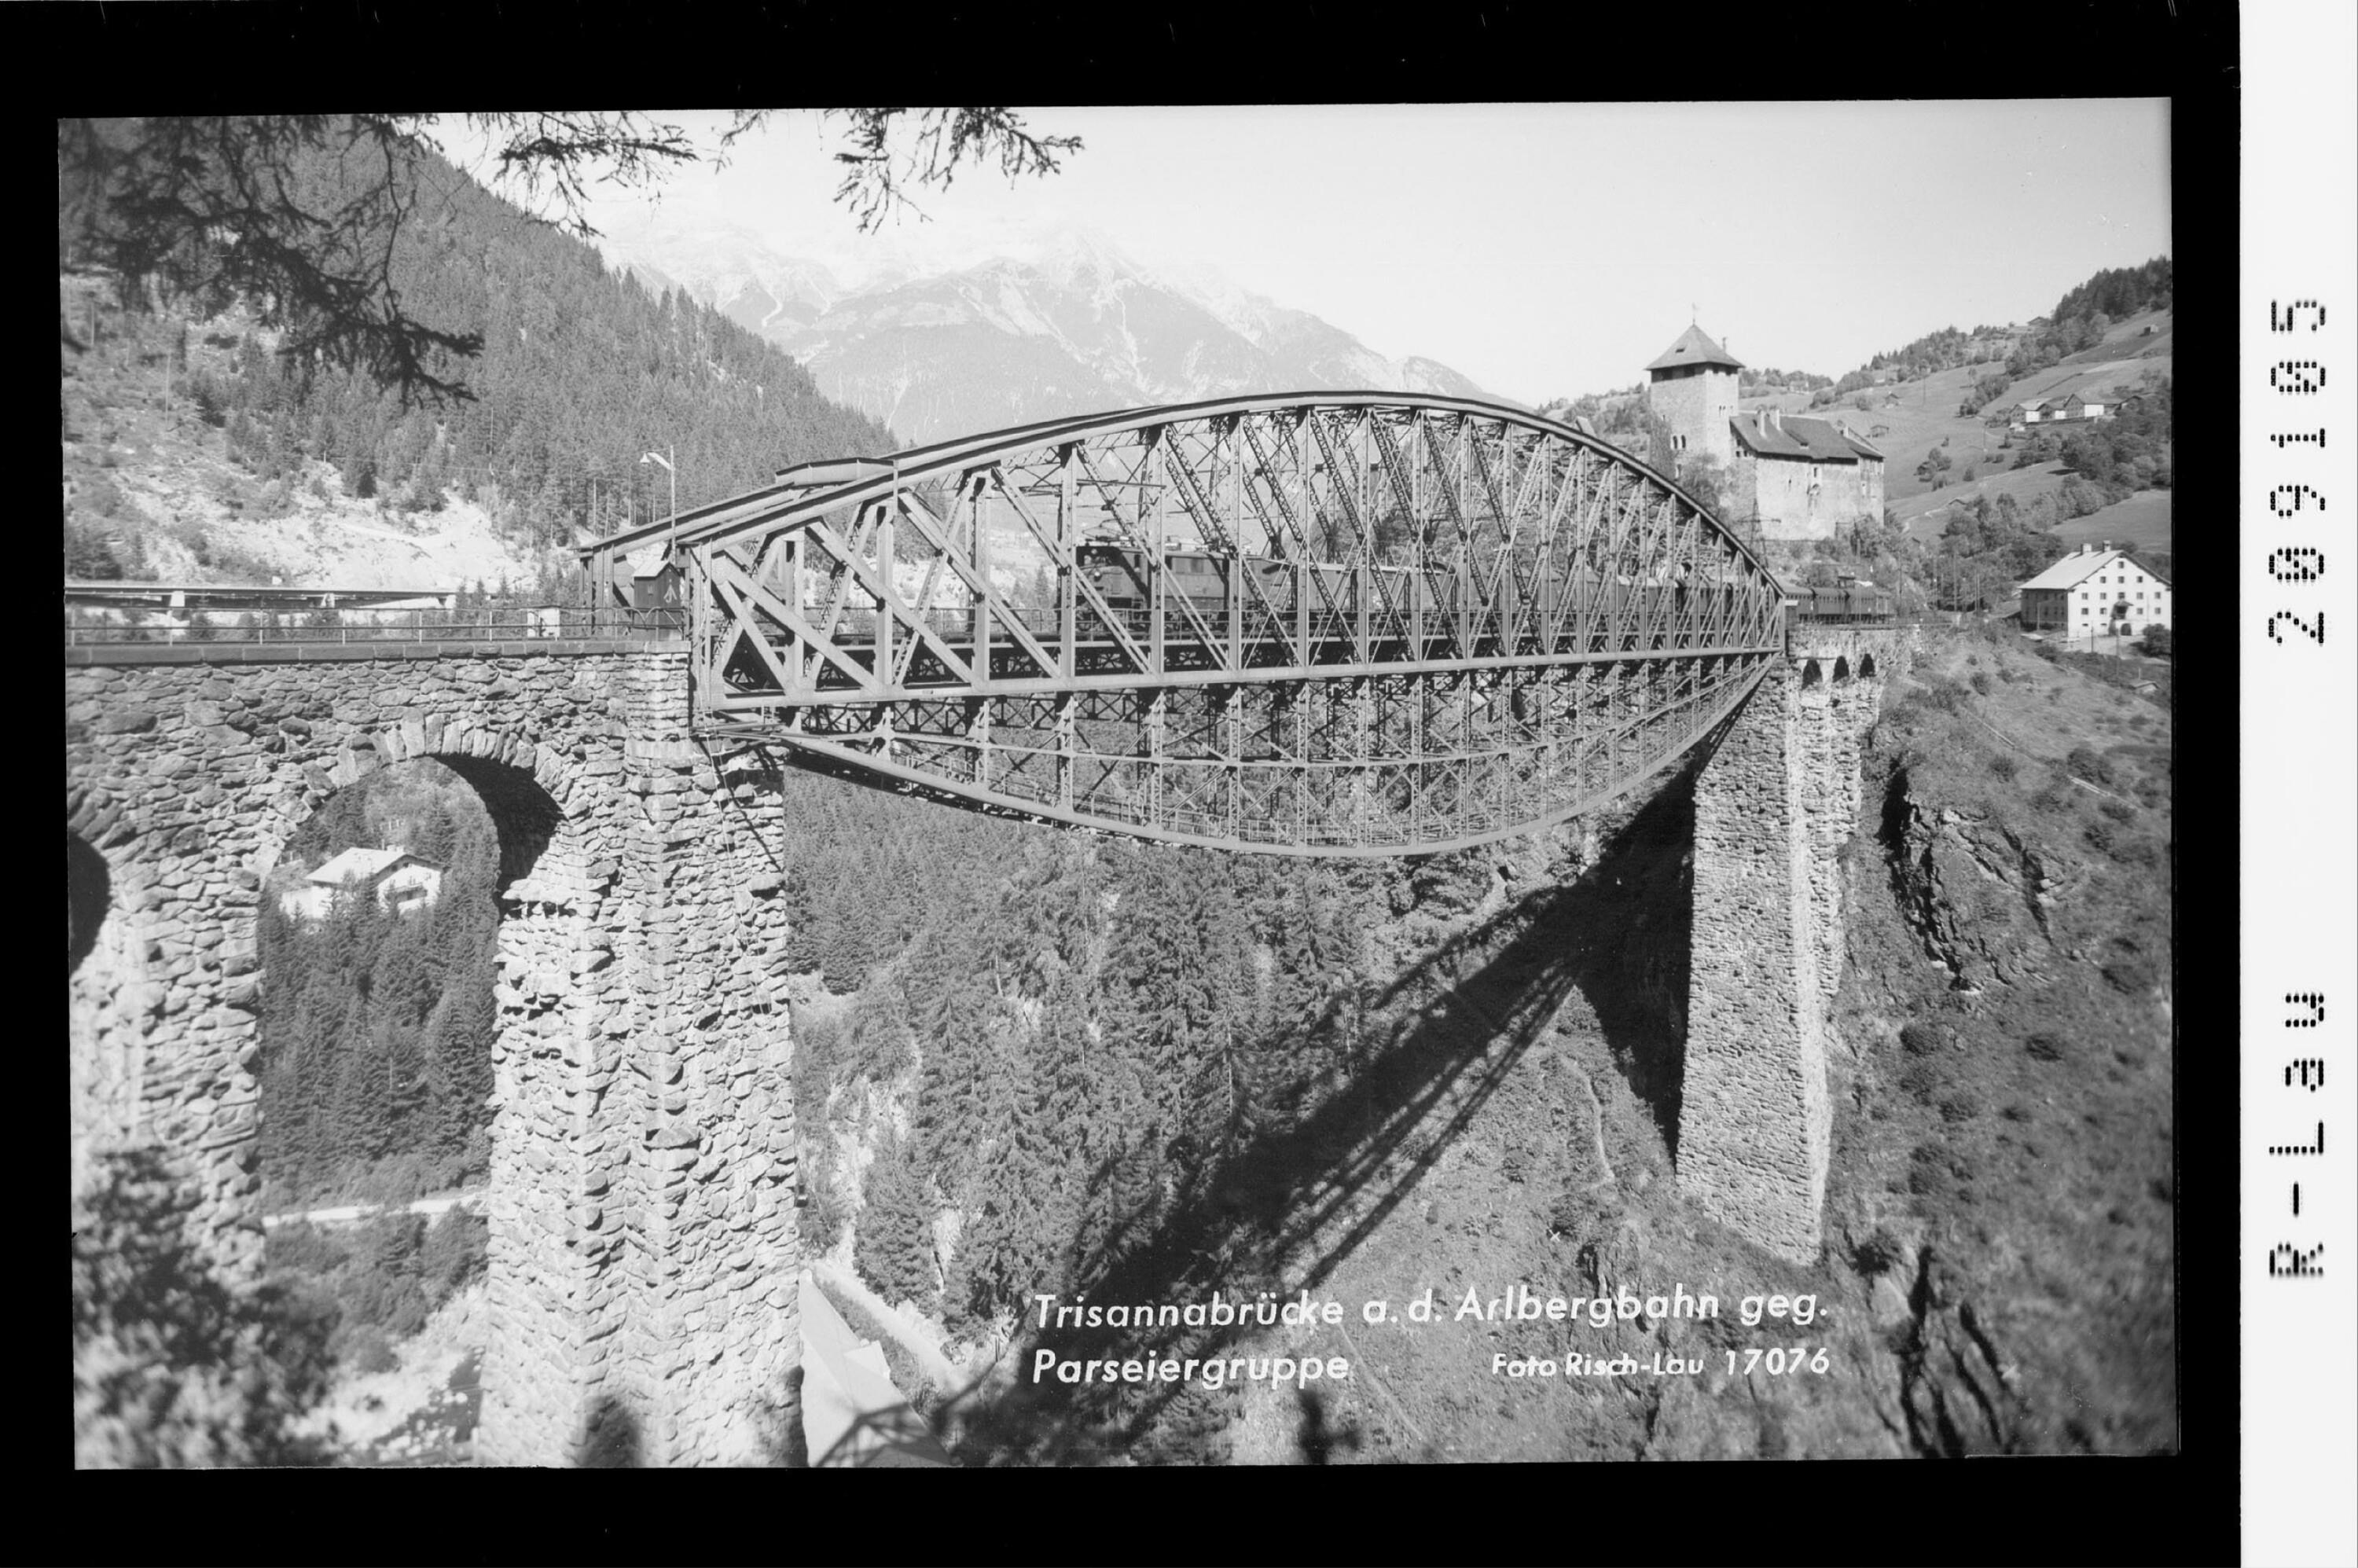 Trisannabrücke an der Arlbergbahn gegen Parseiergruppe></div>


    <hr>
    <div class=